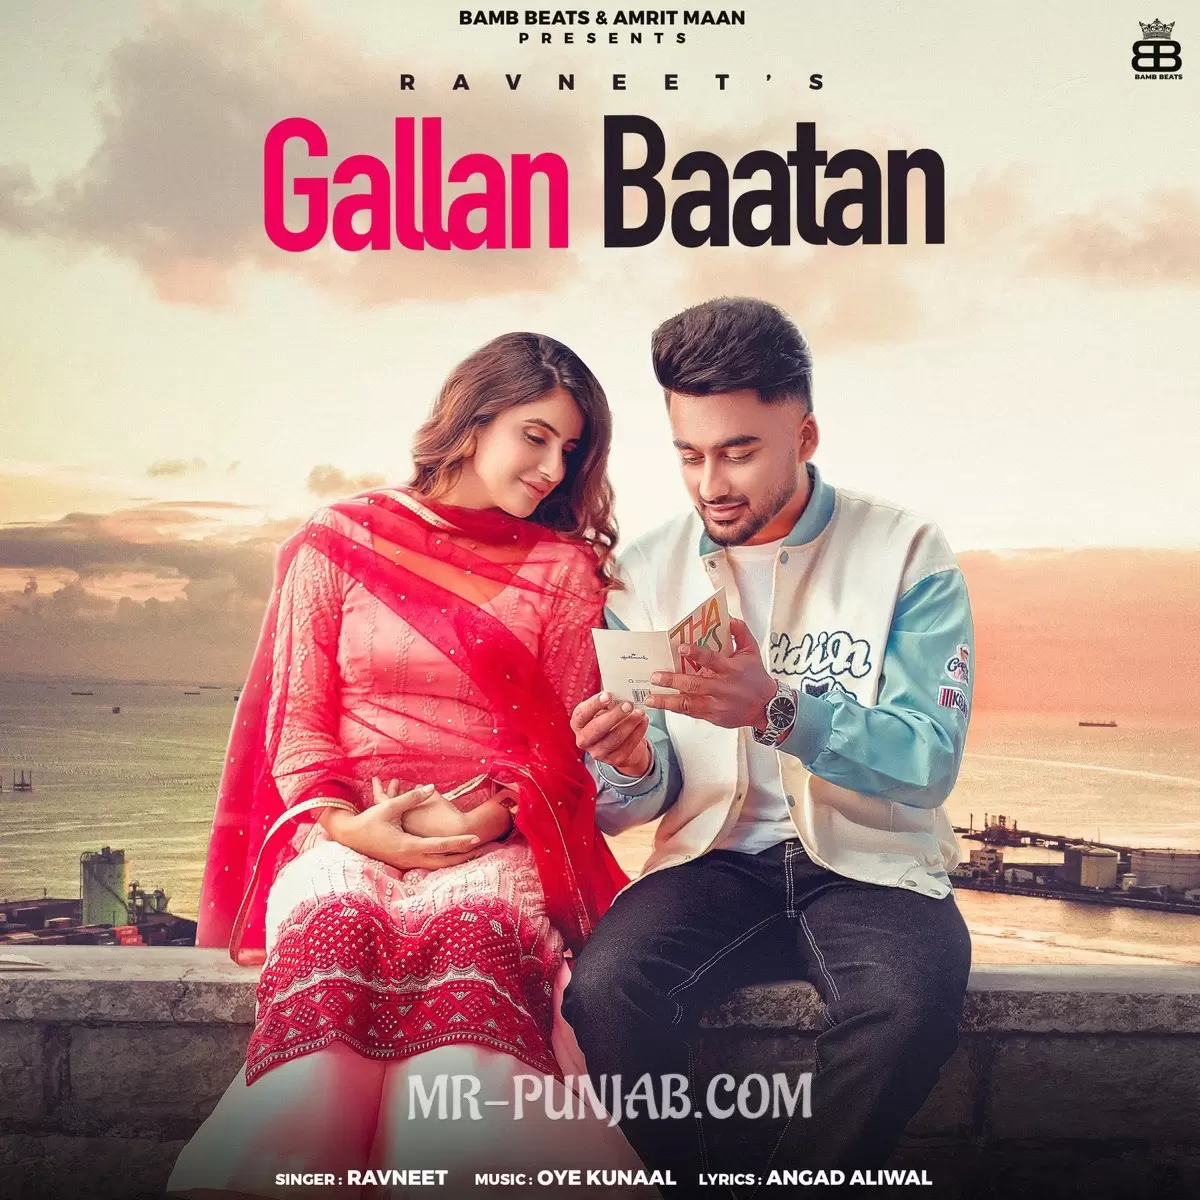 Gallan Baatan Ravneet Mp3 Download Song - Mr-Punjab